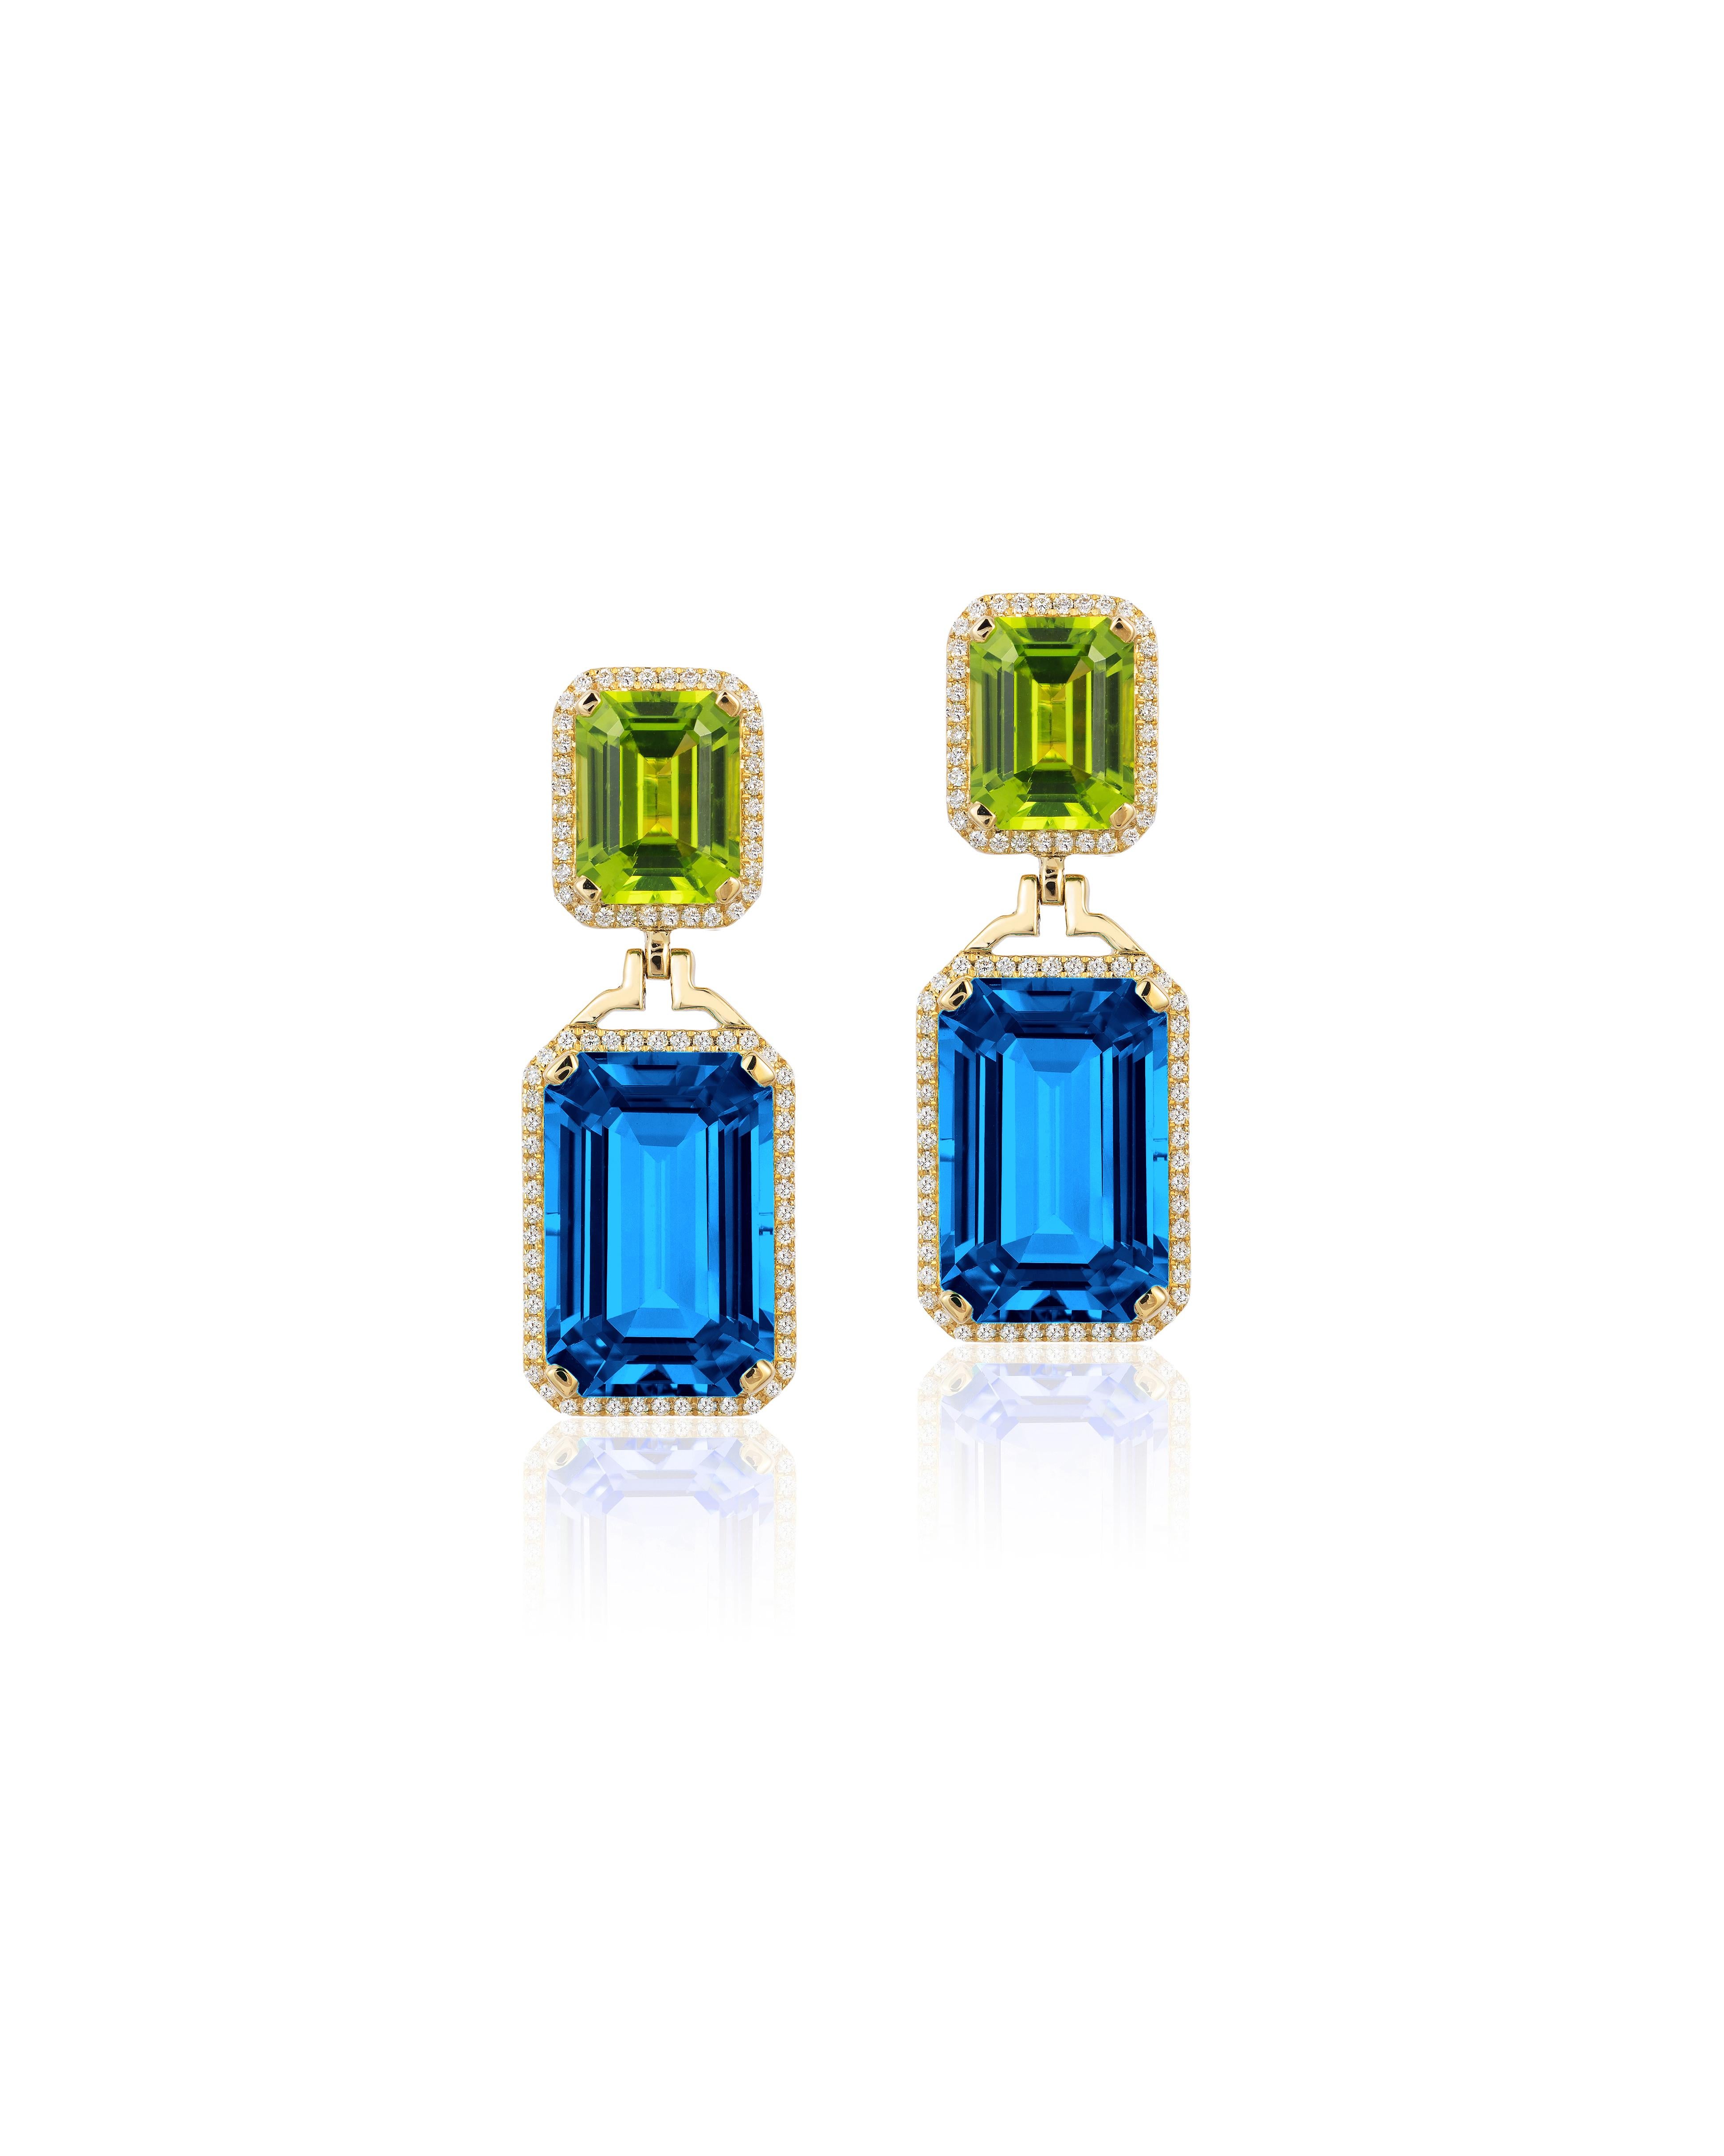 Contemporain Goshwara London Boucles d'oreilles en topaze bleue, émeraude taille émeraude et péridots avec diamants